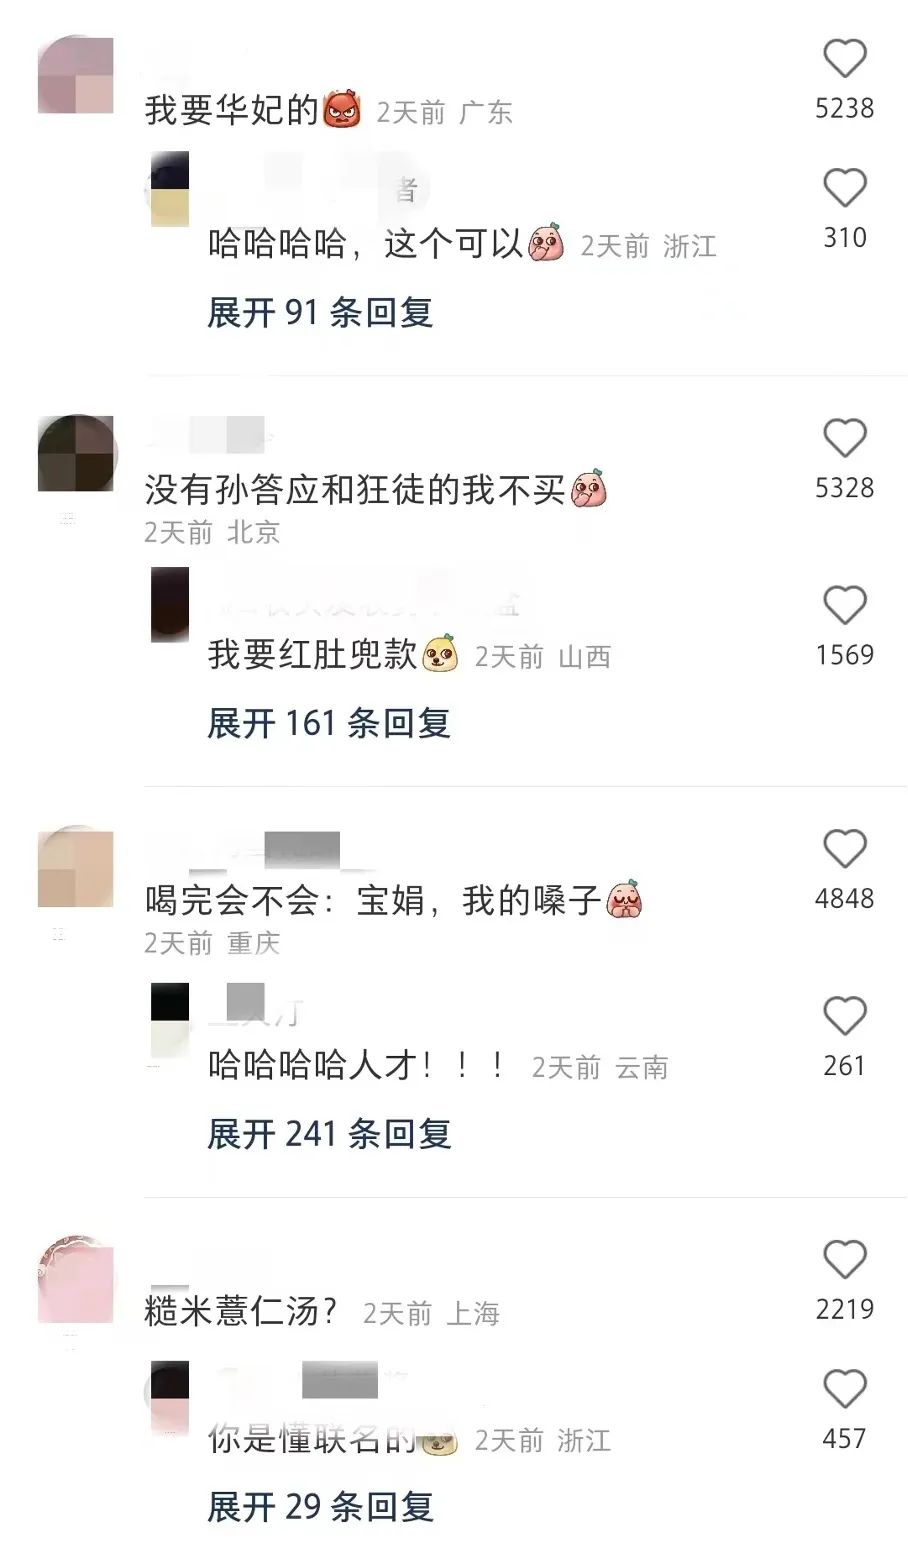 网友对喜茶与甄嬛传的联名反映热烈